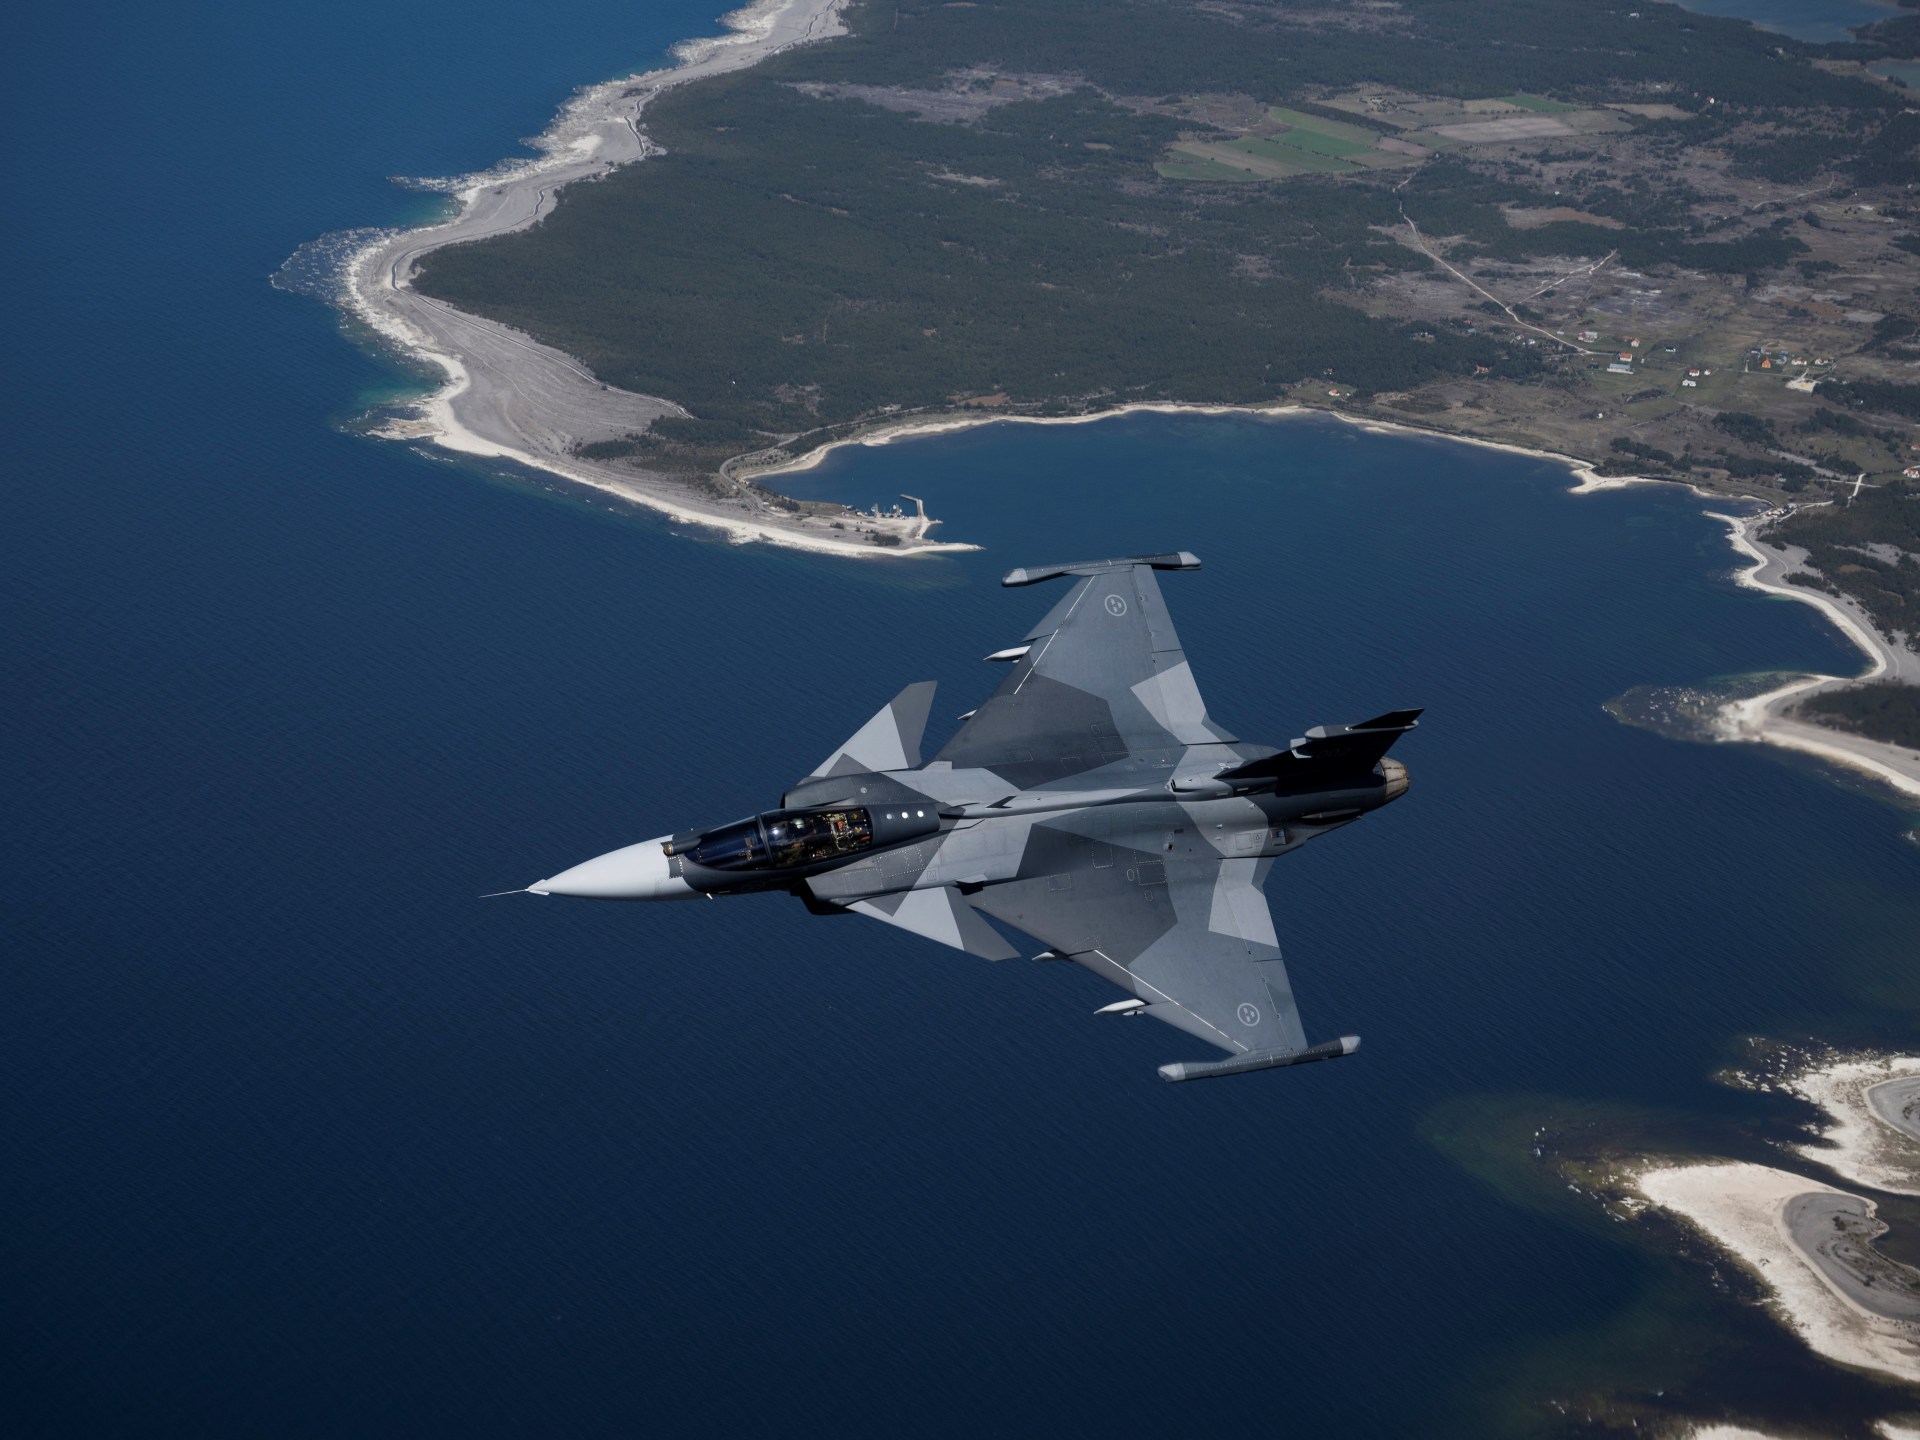 Les pays nordiques prévoient une défense aérienne conjointe pour contrer la menace russe |  Guerre russo-ukrainienne